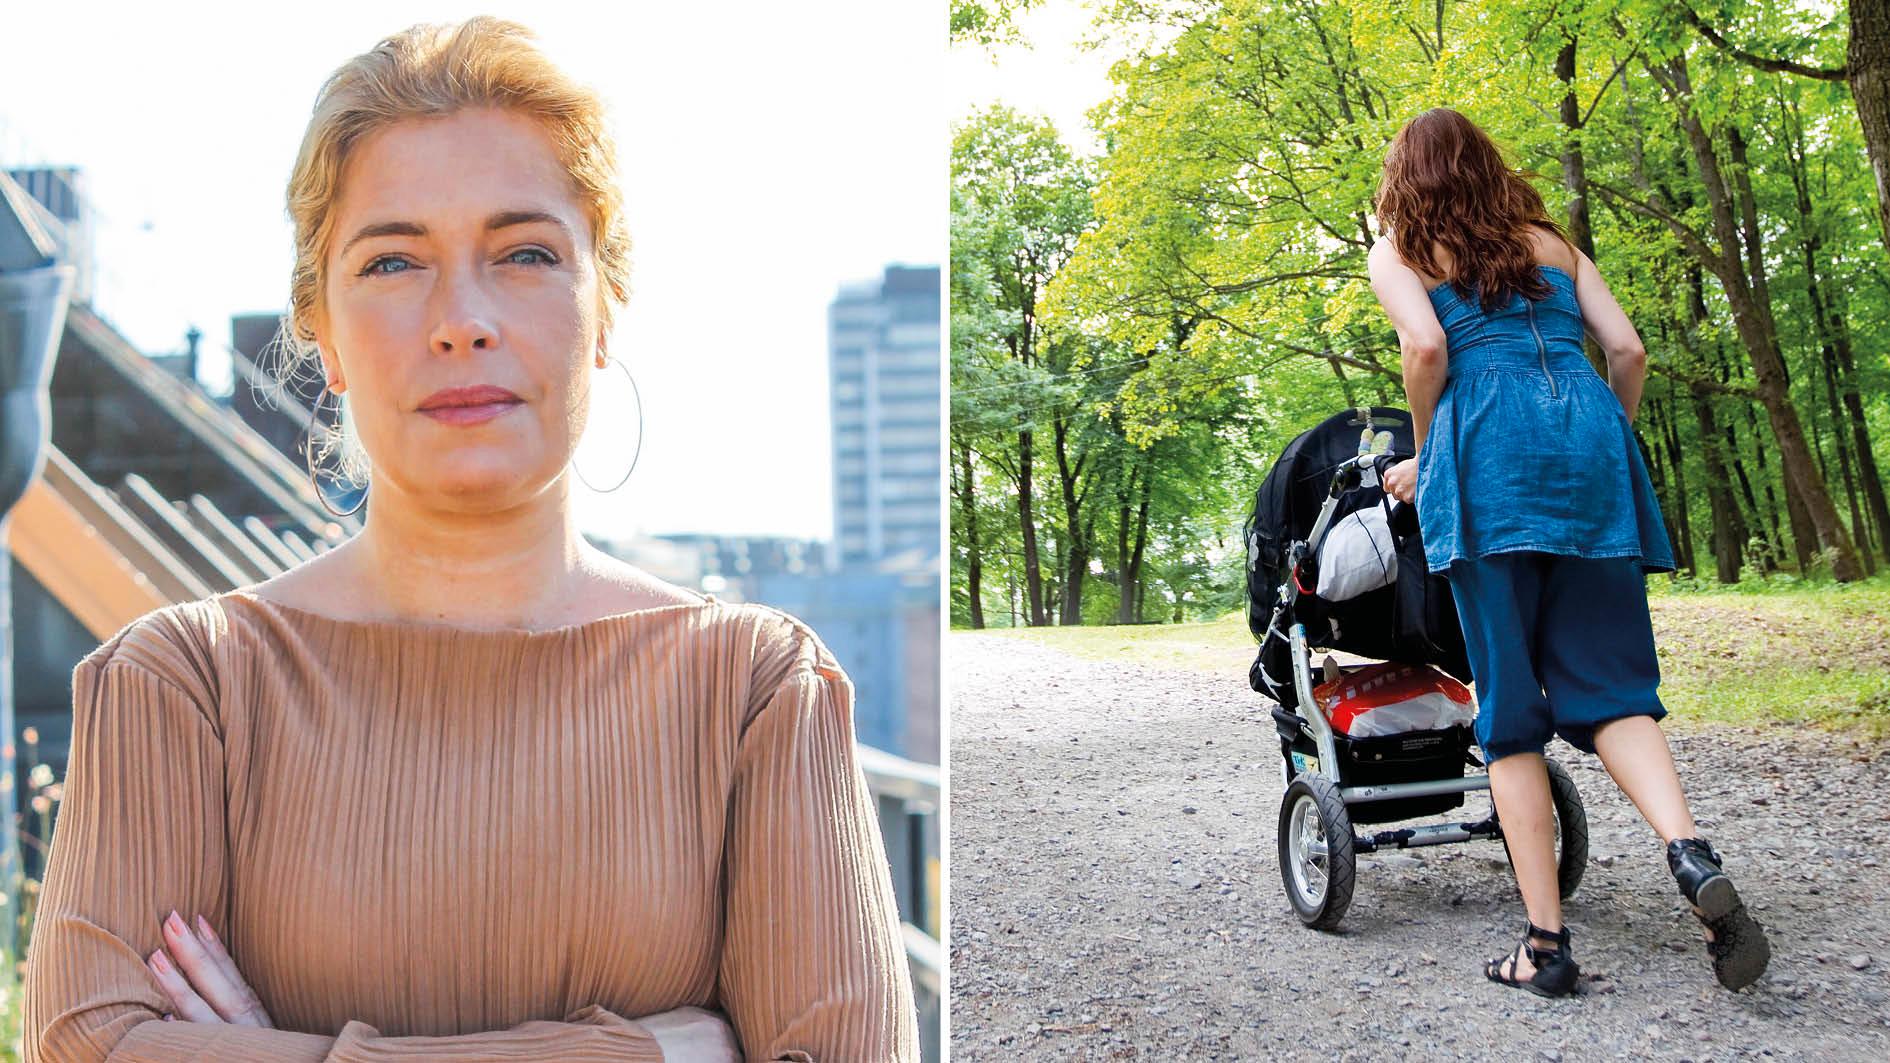 Inför höstbudgeten har regeringen ett förslag som innebär att alla föräldrar ska kunna överlåta föräldradagar till ”någon annan som är försäkrad”. Det här kan bidra till etableringen av ett nanny-system i Sverige och urholka grundidén med föräldraförsäkringen, skriver Annika Strandhäll.